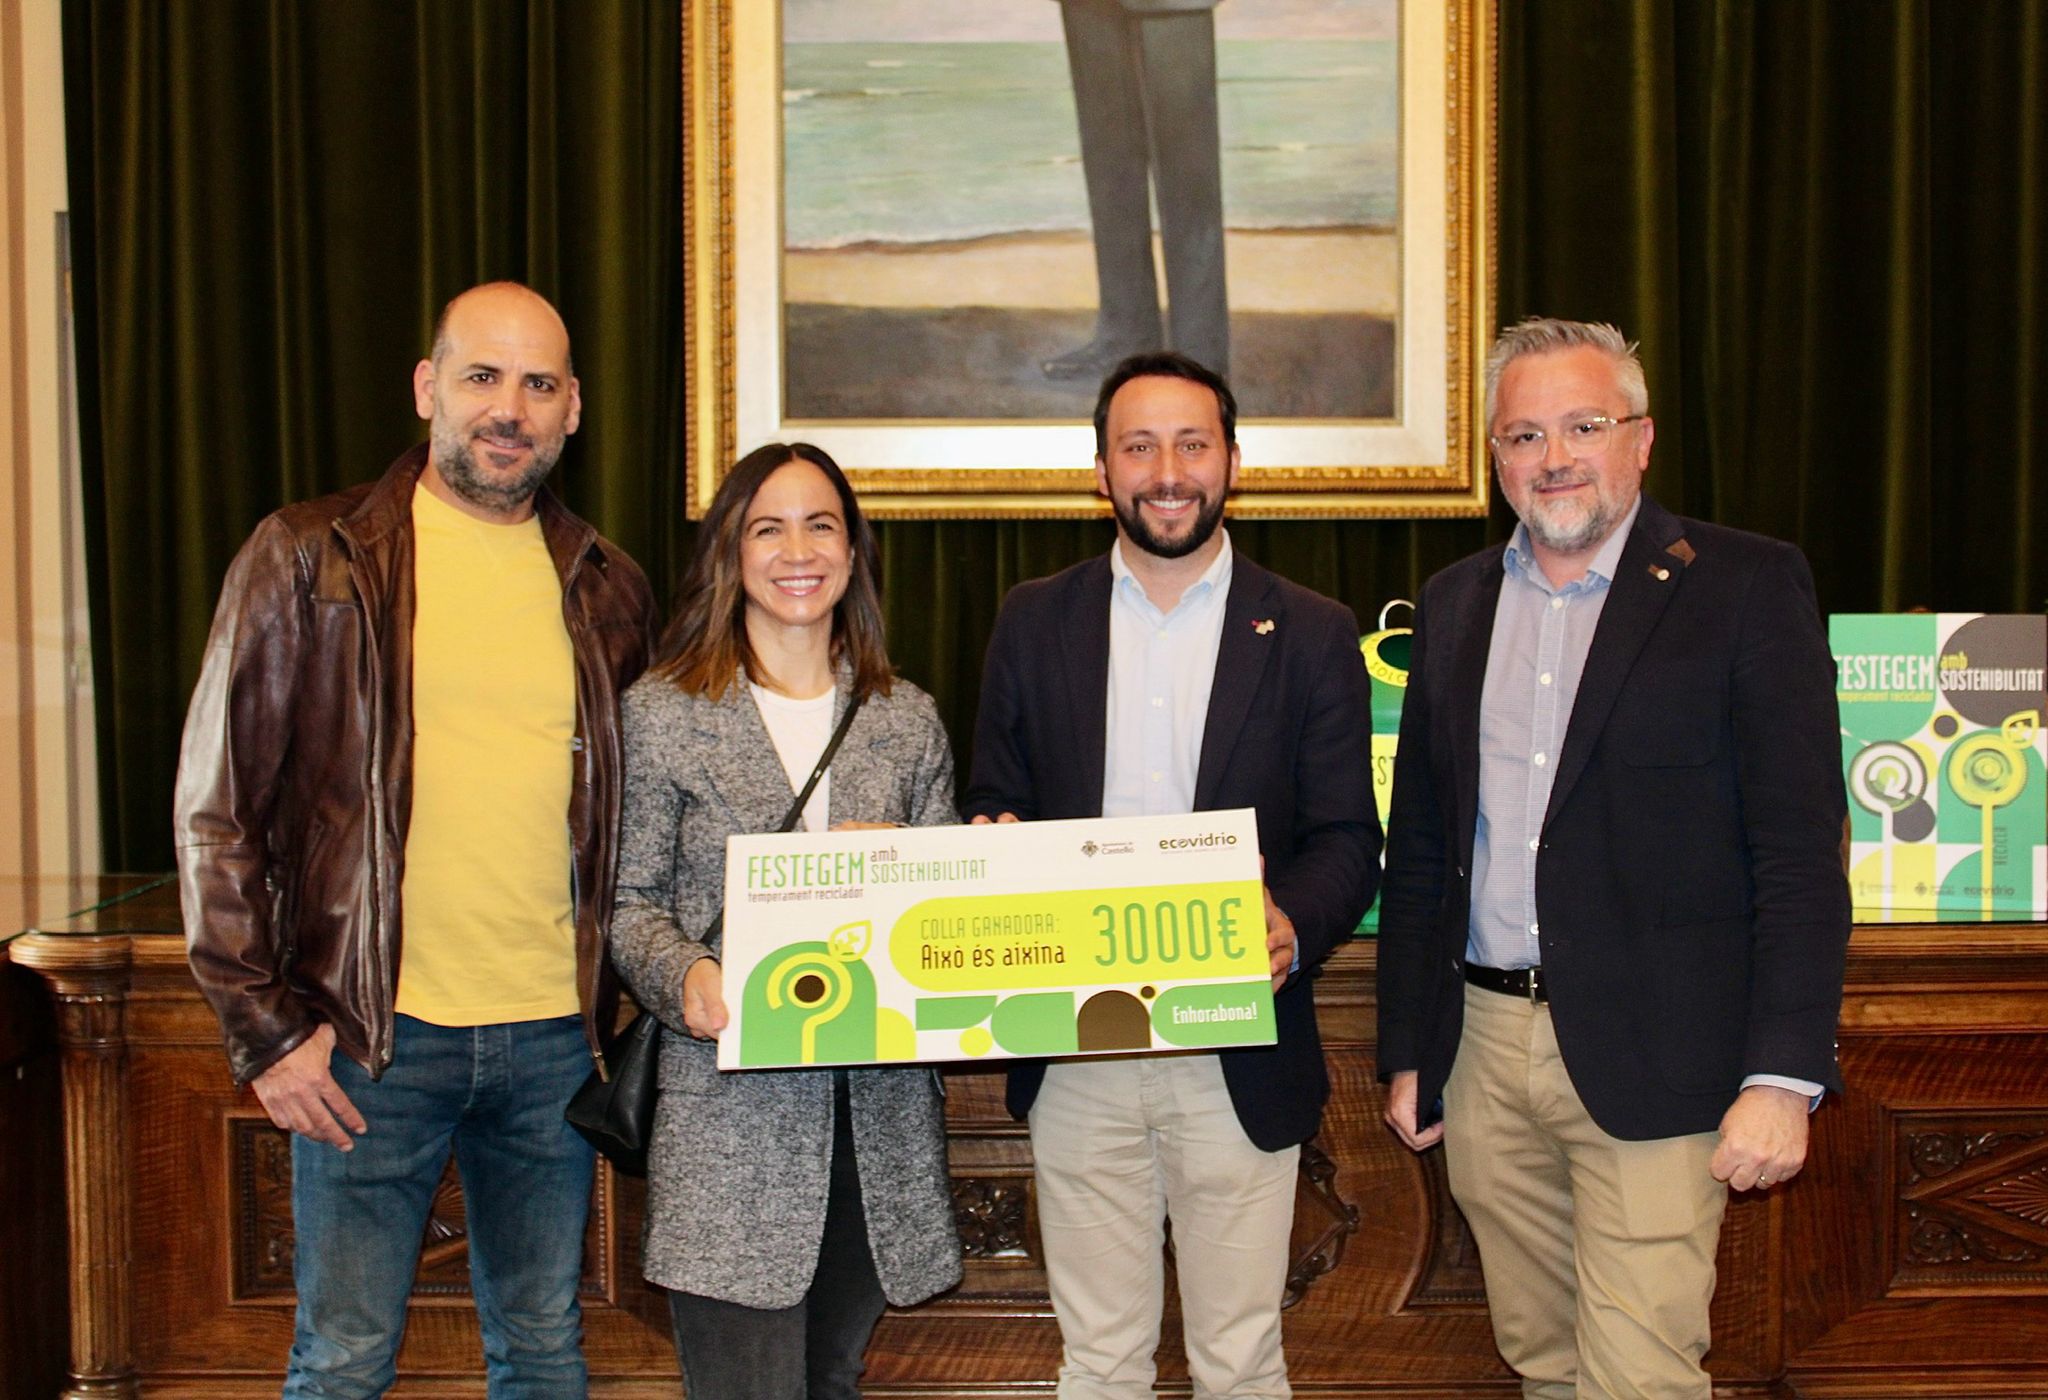 El Ayuntamiento y Ecovidrio entregan el premio de la campaña de fomento del reciclaje en las fiestas de la Magdalena a la colla ‘Aixó és aixina’